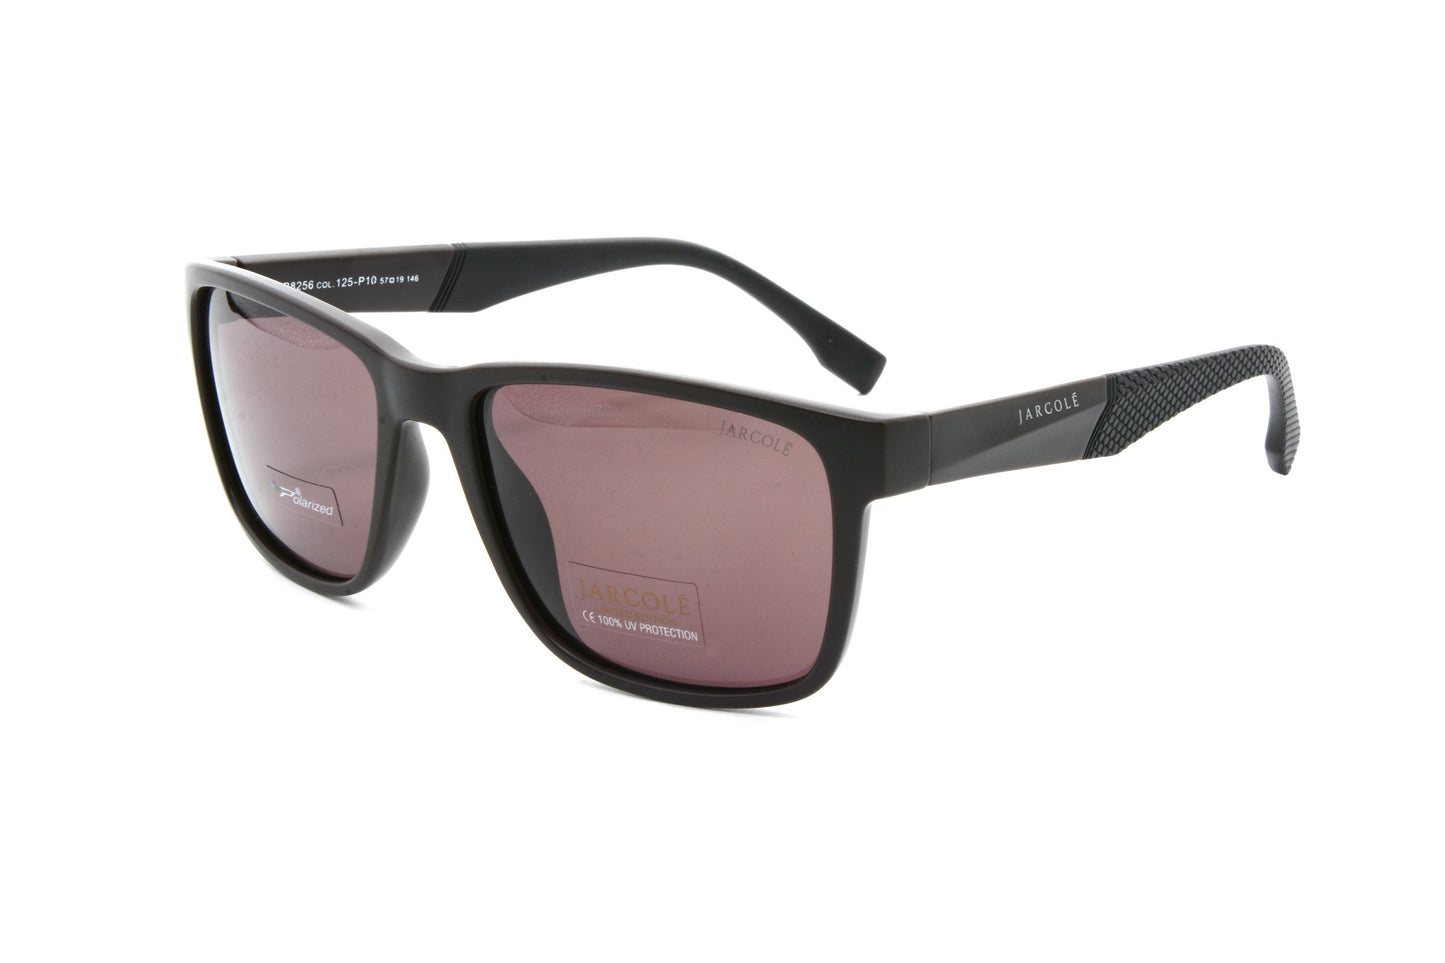 Jarcole sunglasses JR8256 125-P10